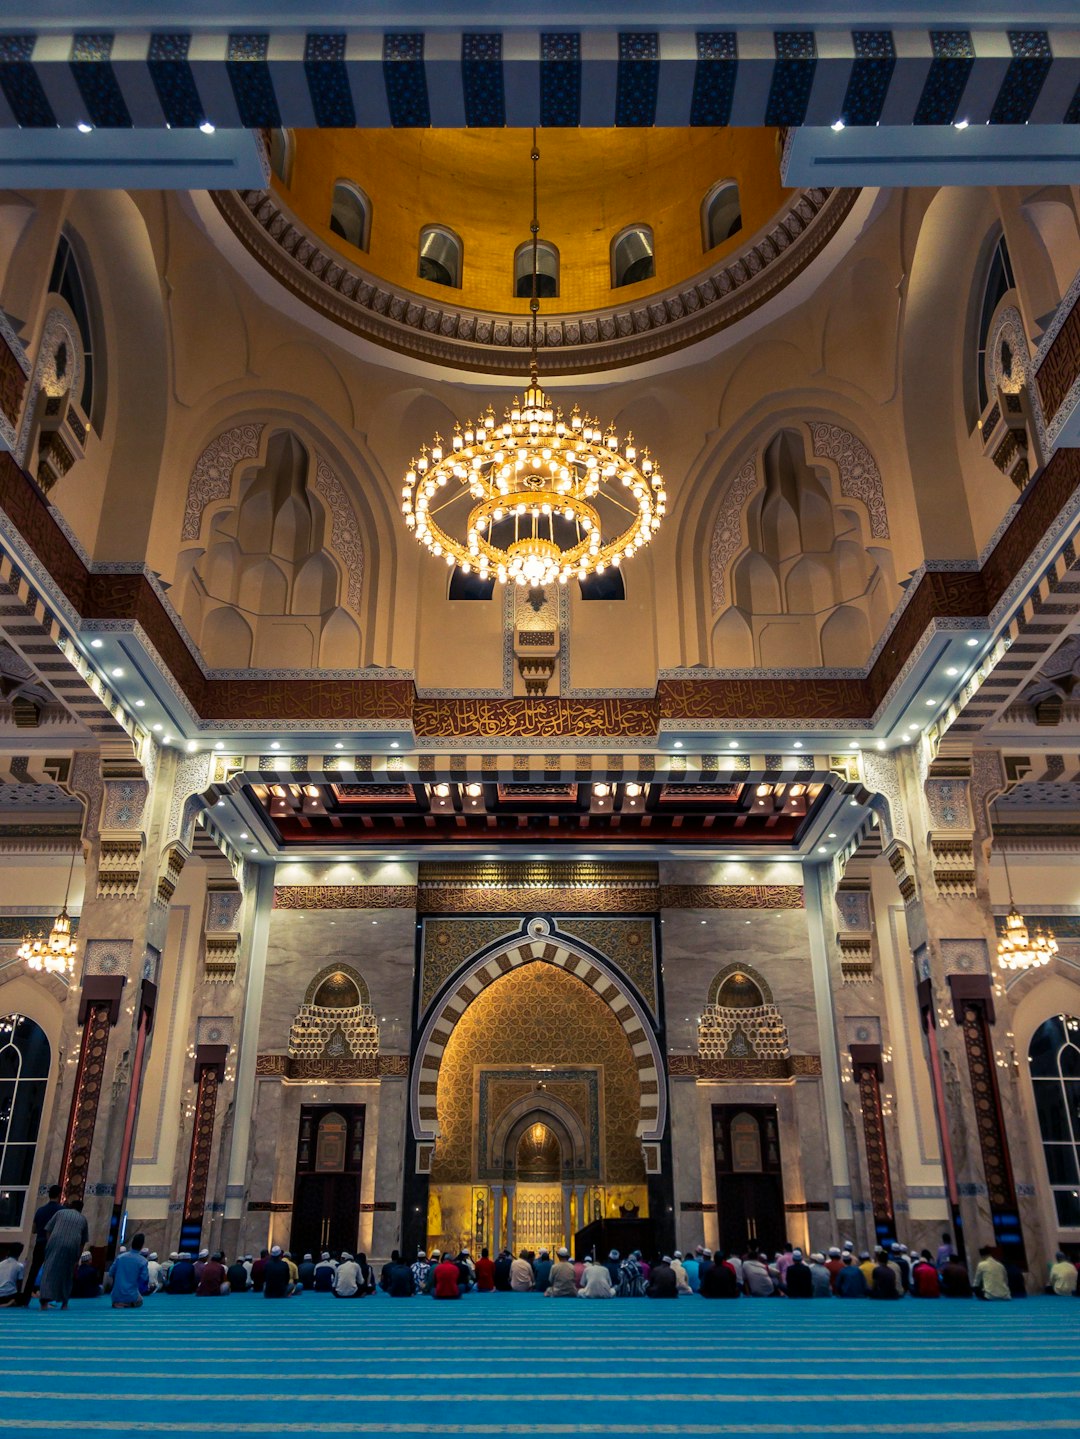 Place of worship photo spot Masjid Sri Sendayan Kuala Lumpur